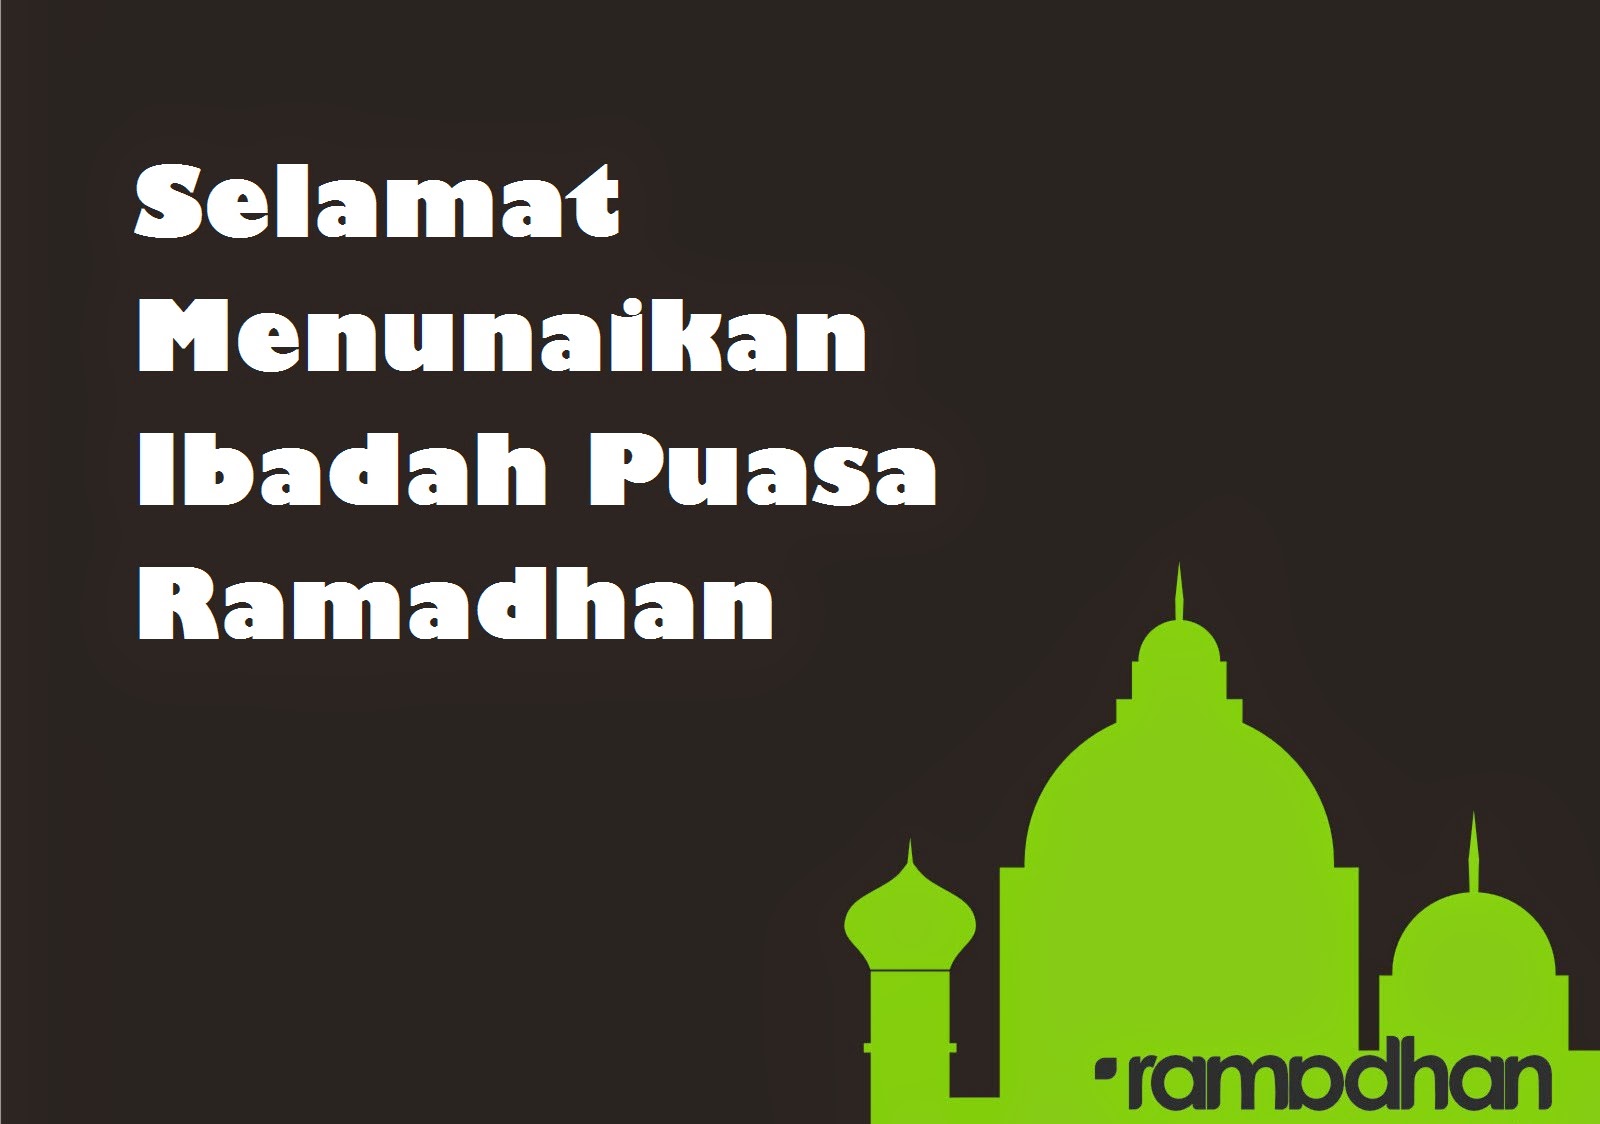 Kata Kata Ucapan Jelang Puasa Ramadhan 2014